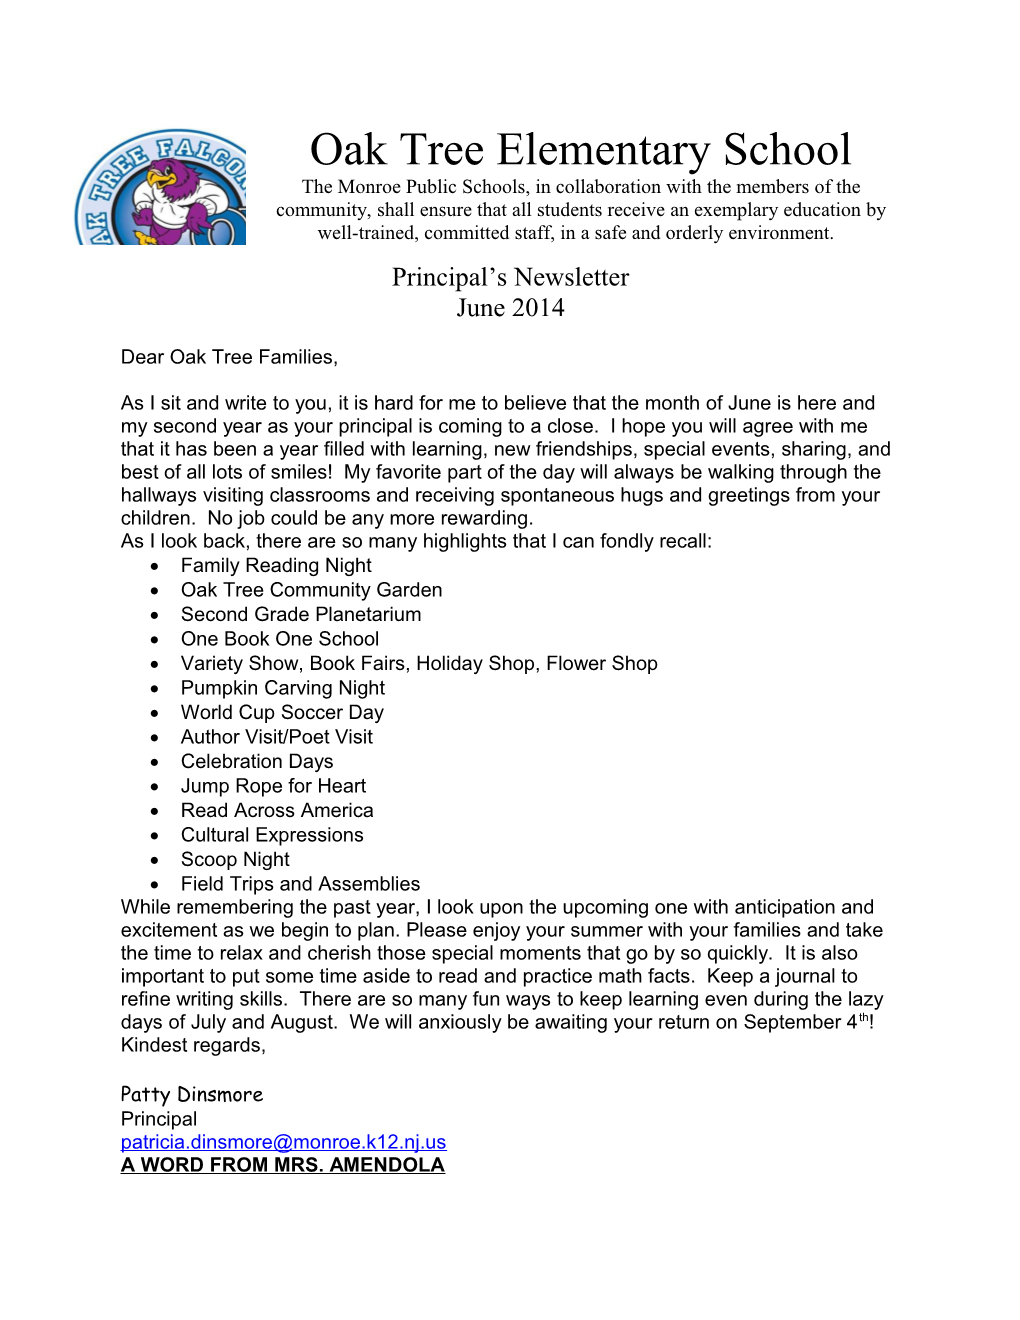 Dear Oak Tree Families